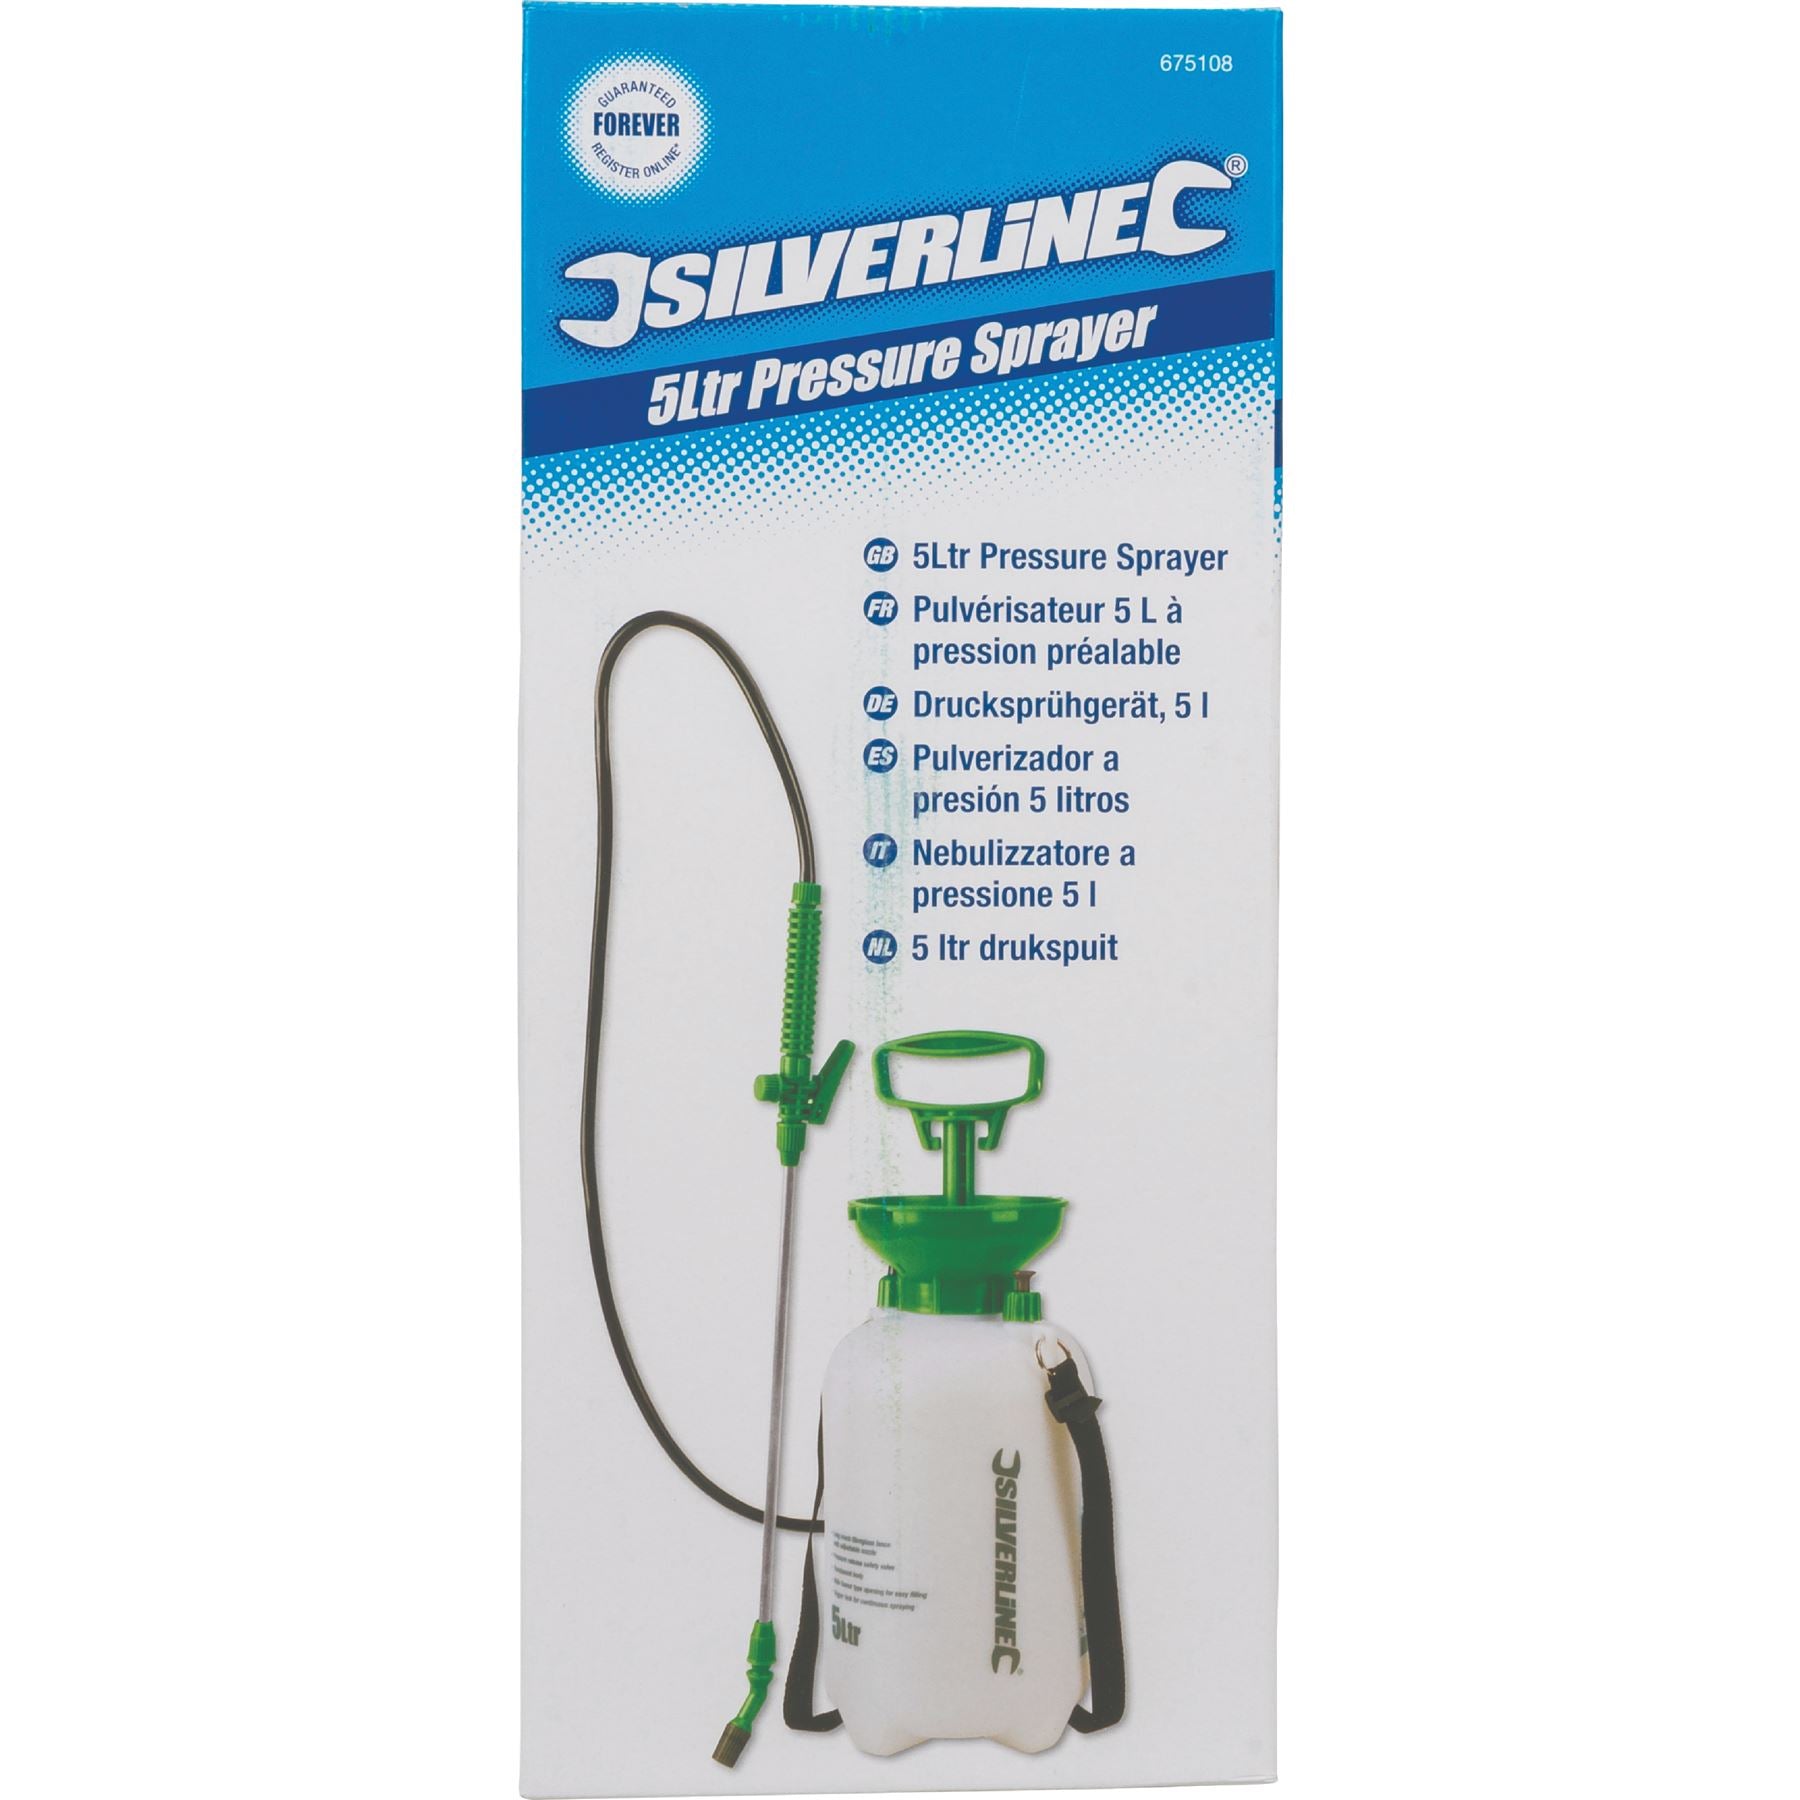 Silverline Pressure Sprayer 5L 8L 10L Garden Lawn Pump Spray Fertilizer Weeds